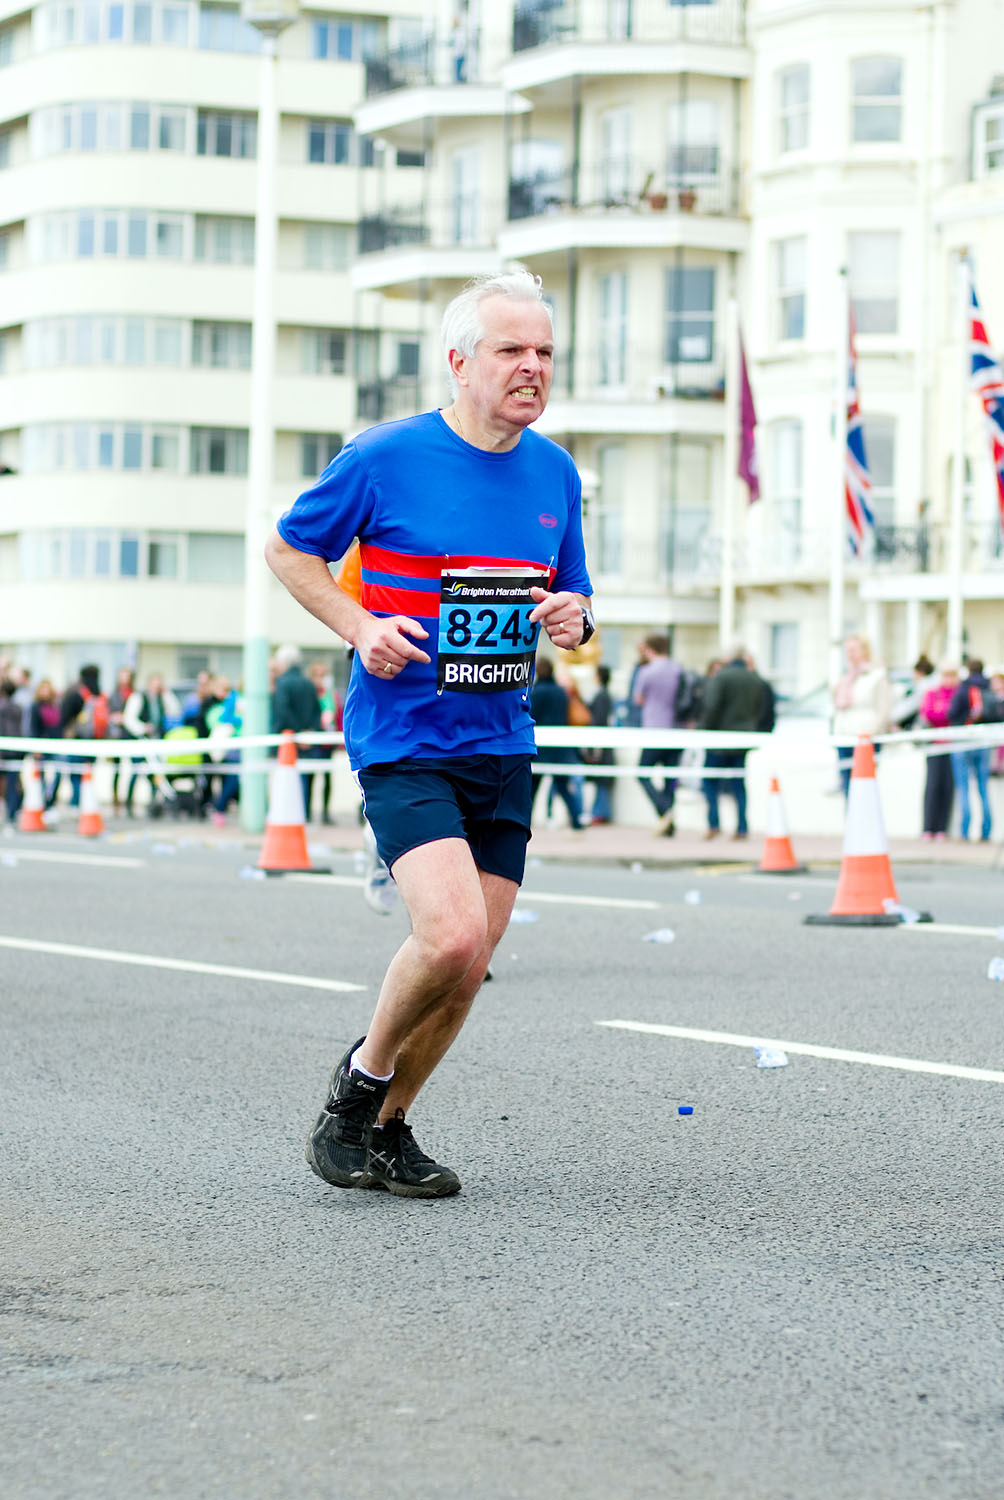  Brighton Marathon 2012 - Mile 24.75 